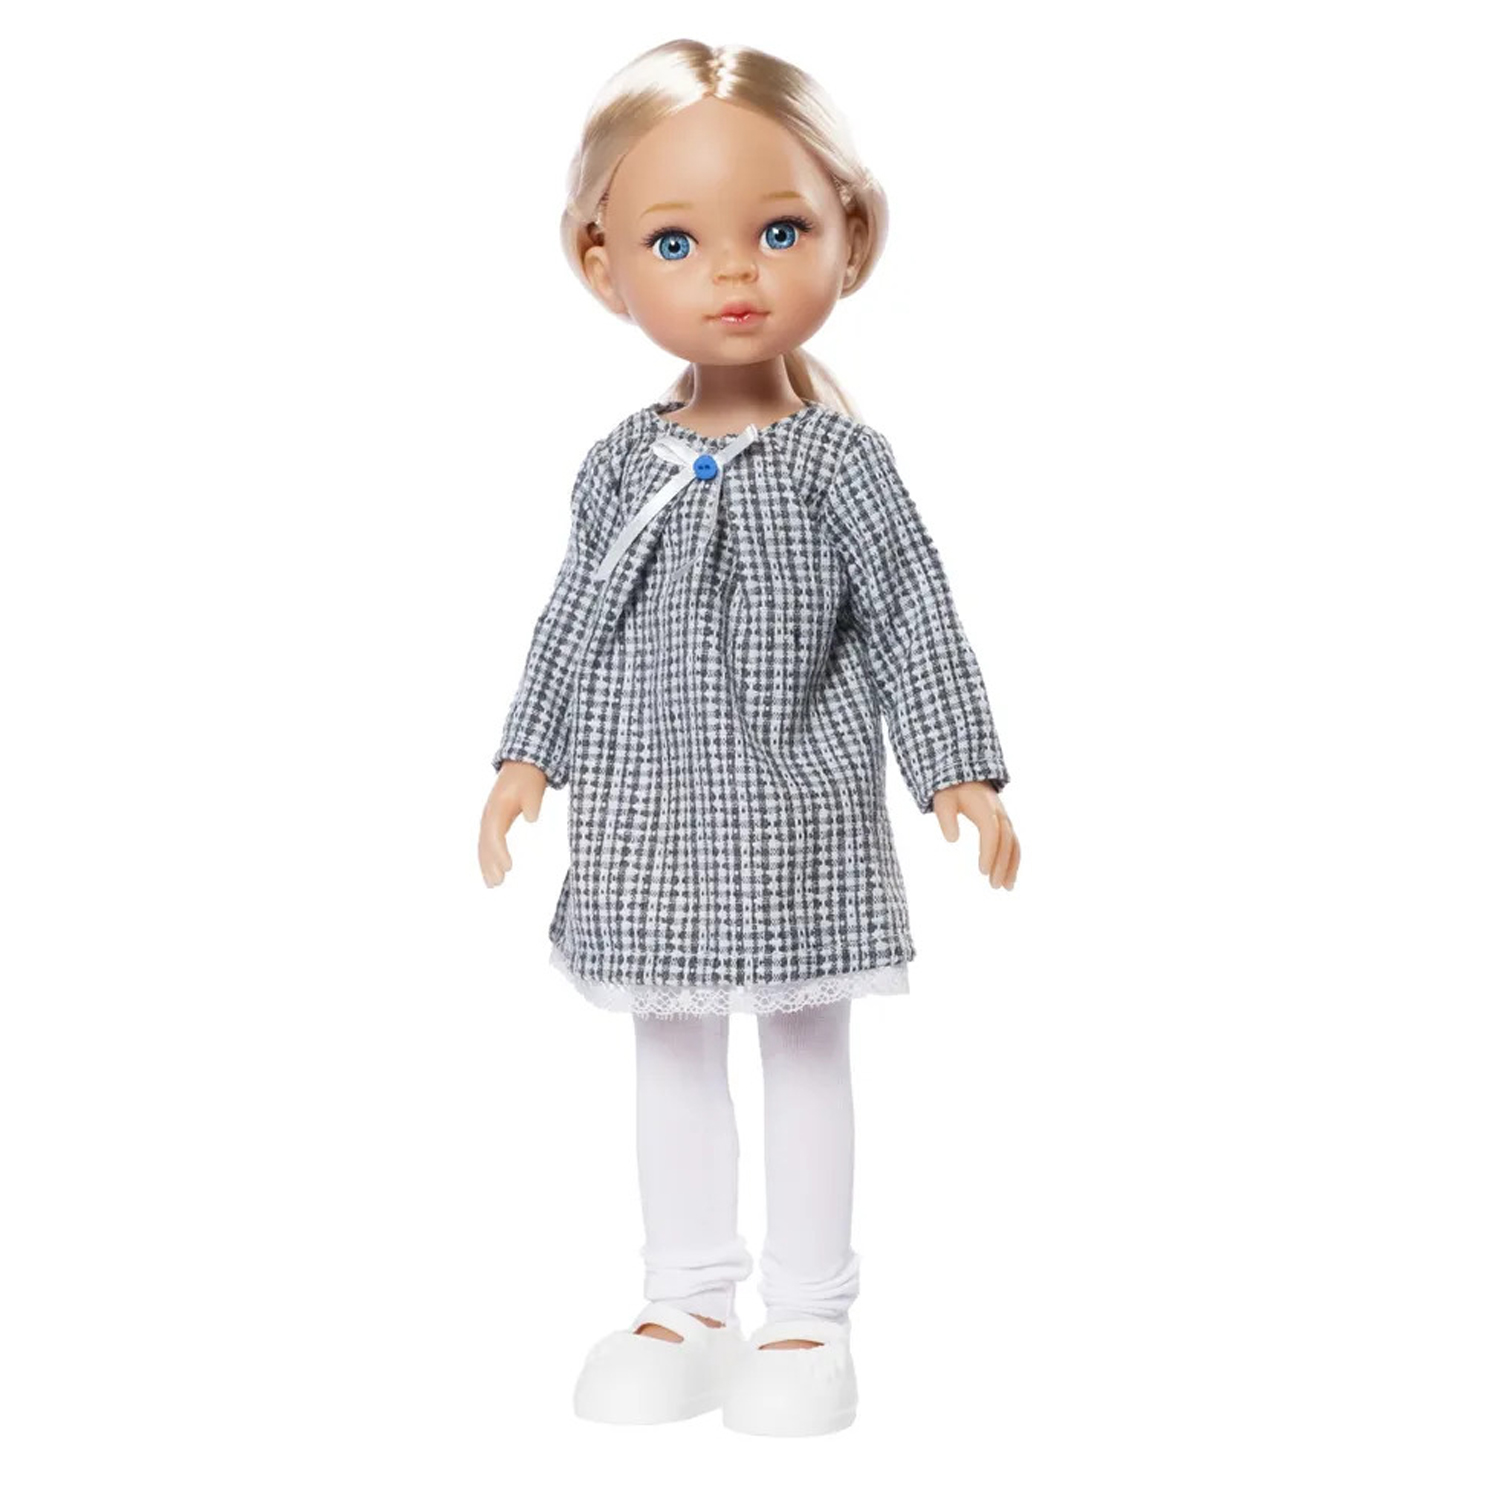 Модная кукла Funky Toys Николь, 33 см, , FT0696186 модная одежда своими руками сшей наряд за 1 вечер